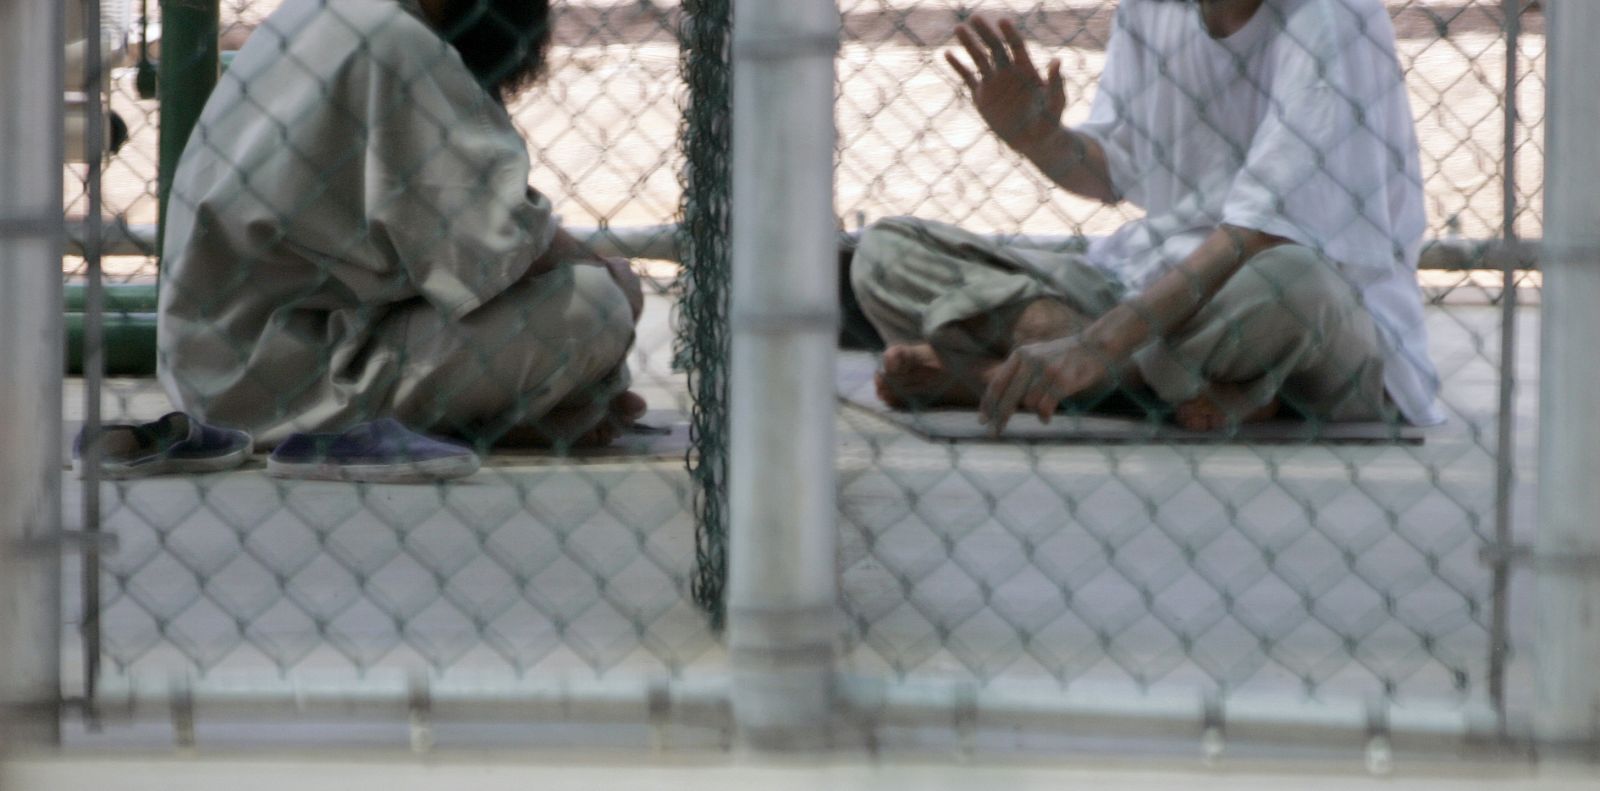 Dos hombres detenidos en el Campo VI de la prisión de Guantánamo en septiembre de 2007 conversan sentados en el suelo.